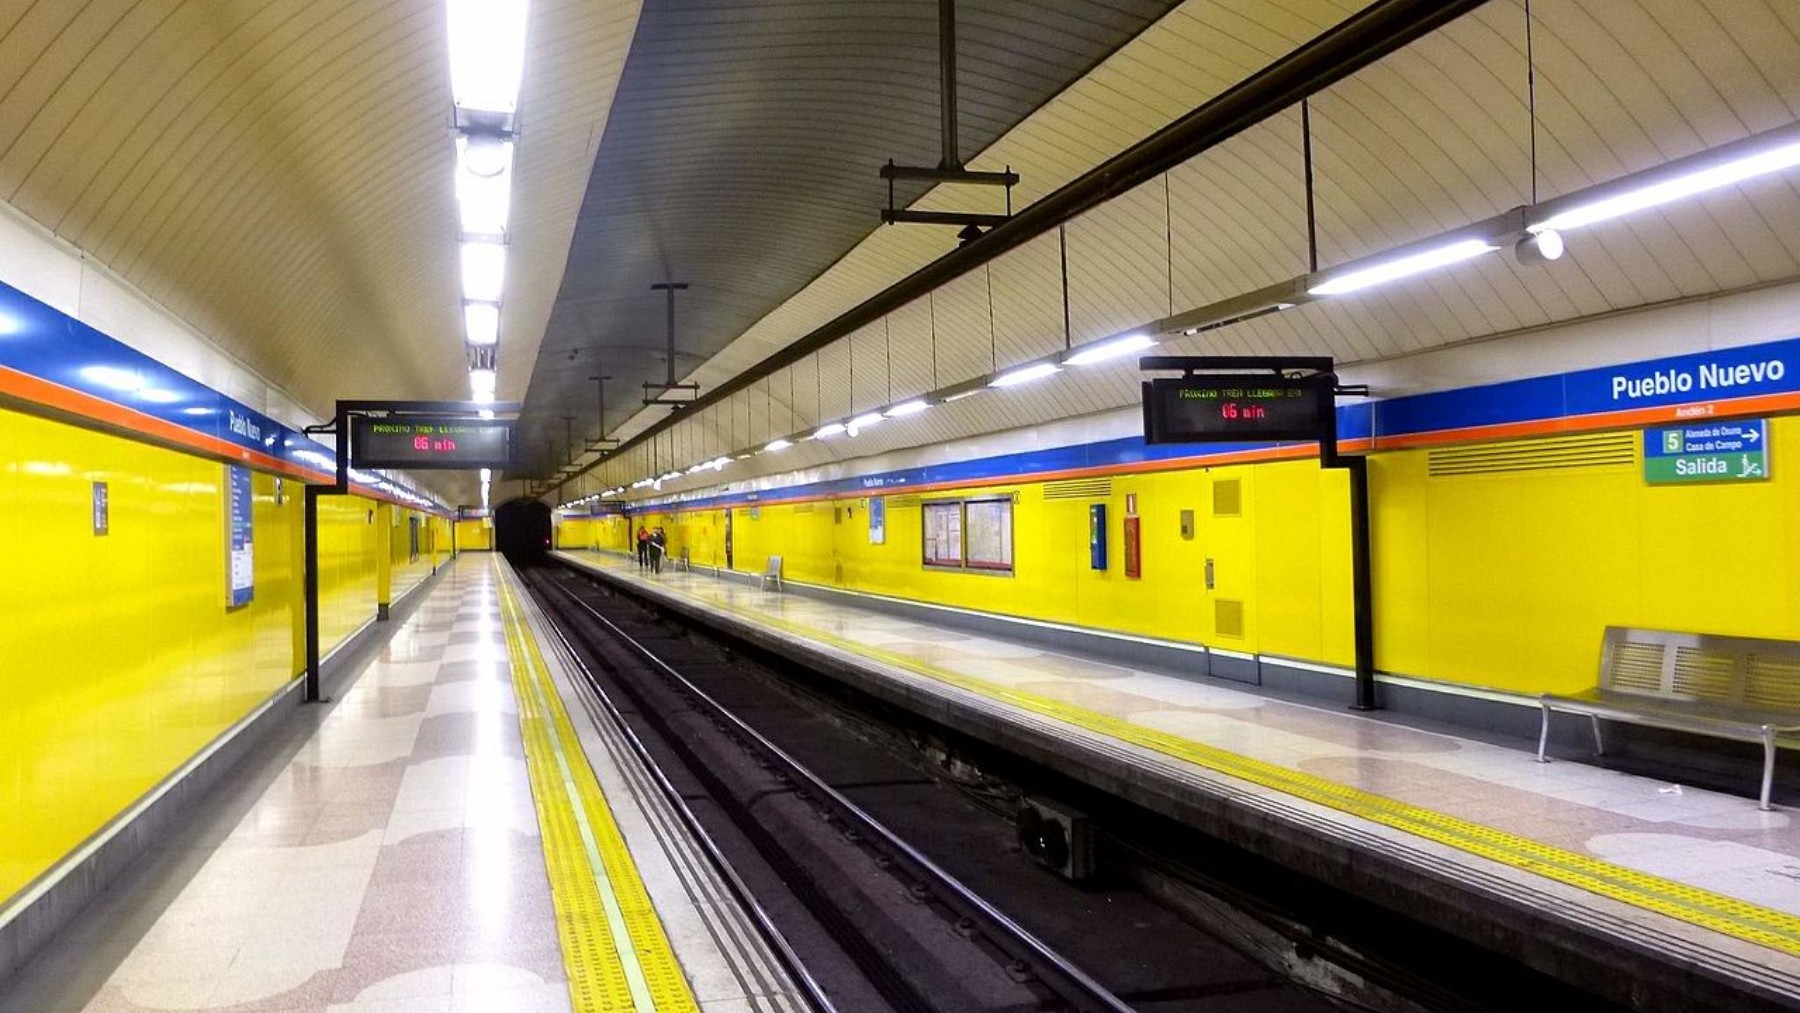 Estación del Metro de Madrid Pueblo Nuevo